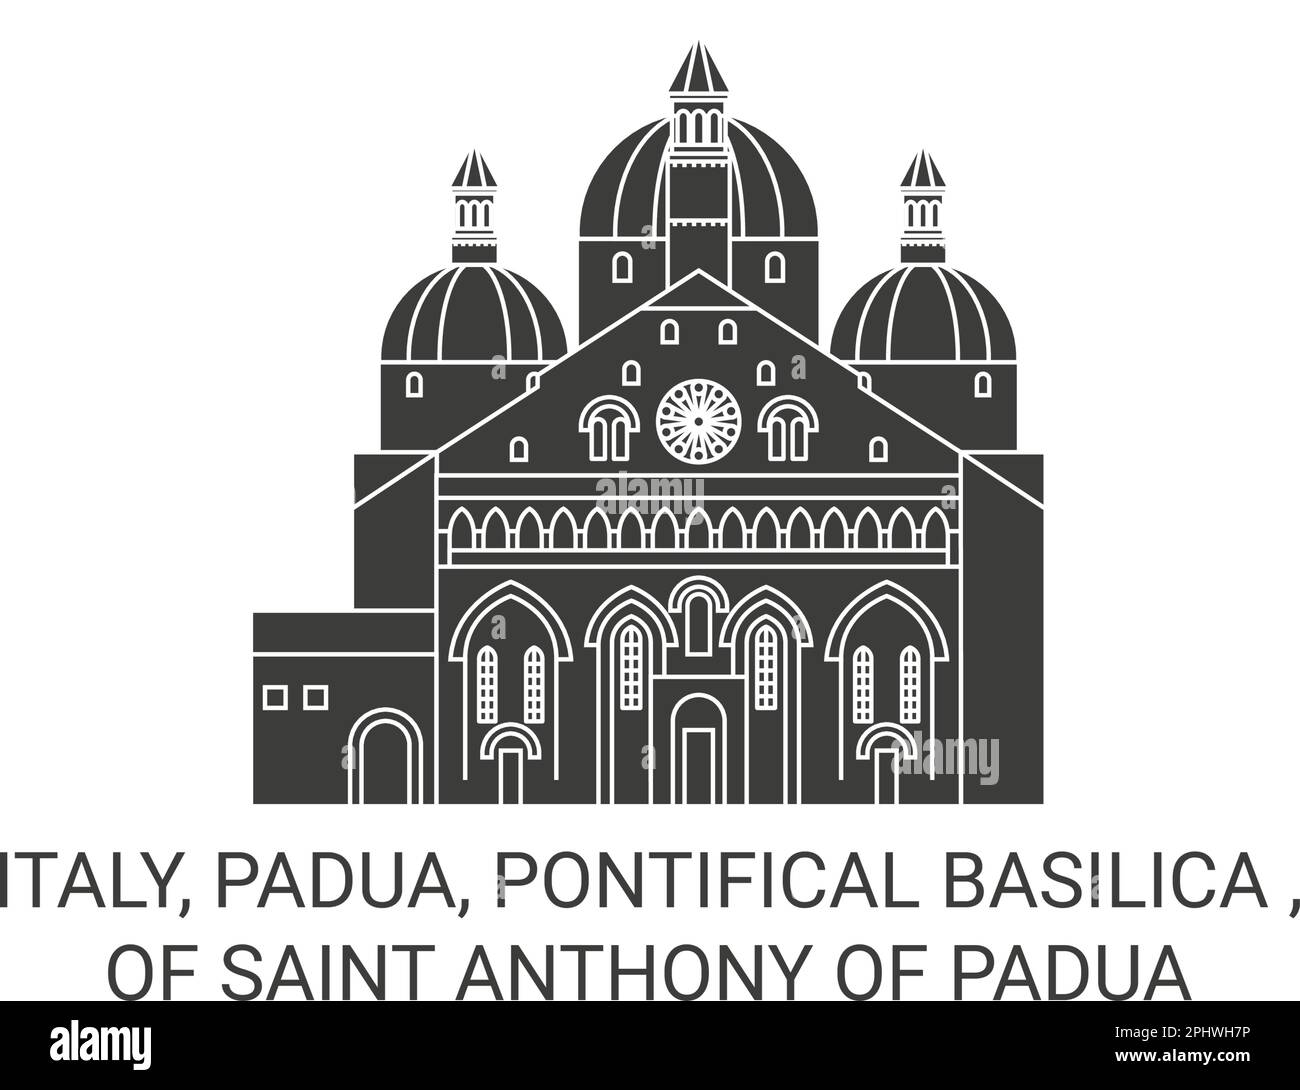 Italia, Padova, Pontificia Basilica , di Sant'Antonio da Padova viaggio punto di riferimento vettoriale illustrazione Illustrazione Vettoriale